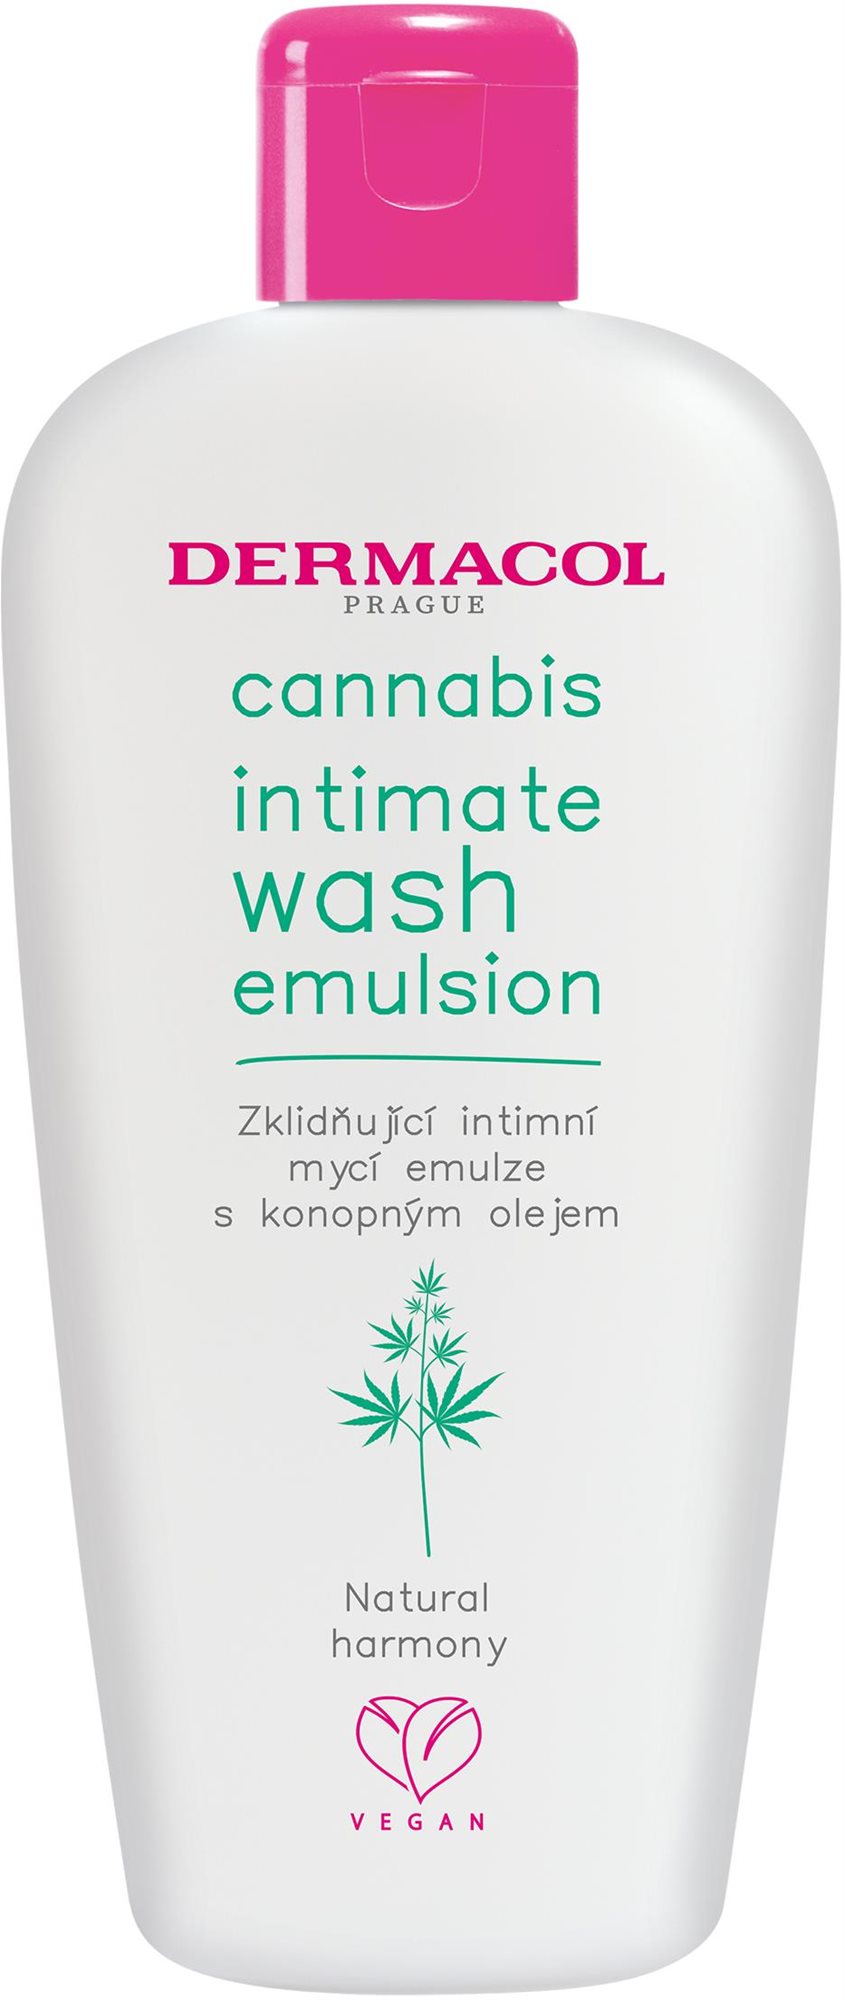 Krémtusfürdő DERMACOL Cannabis intimate wash emulsion 200 ml